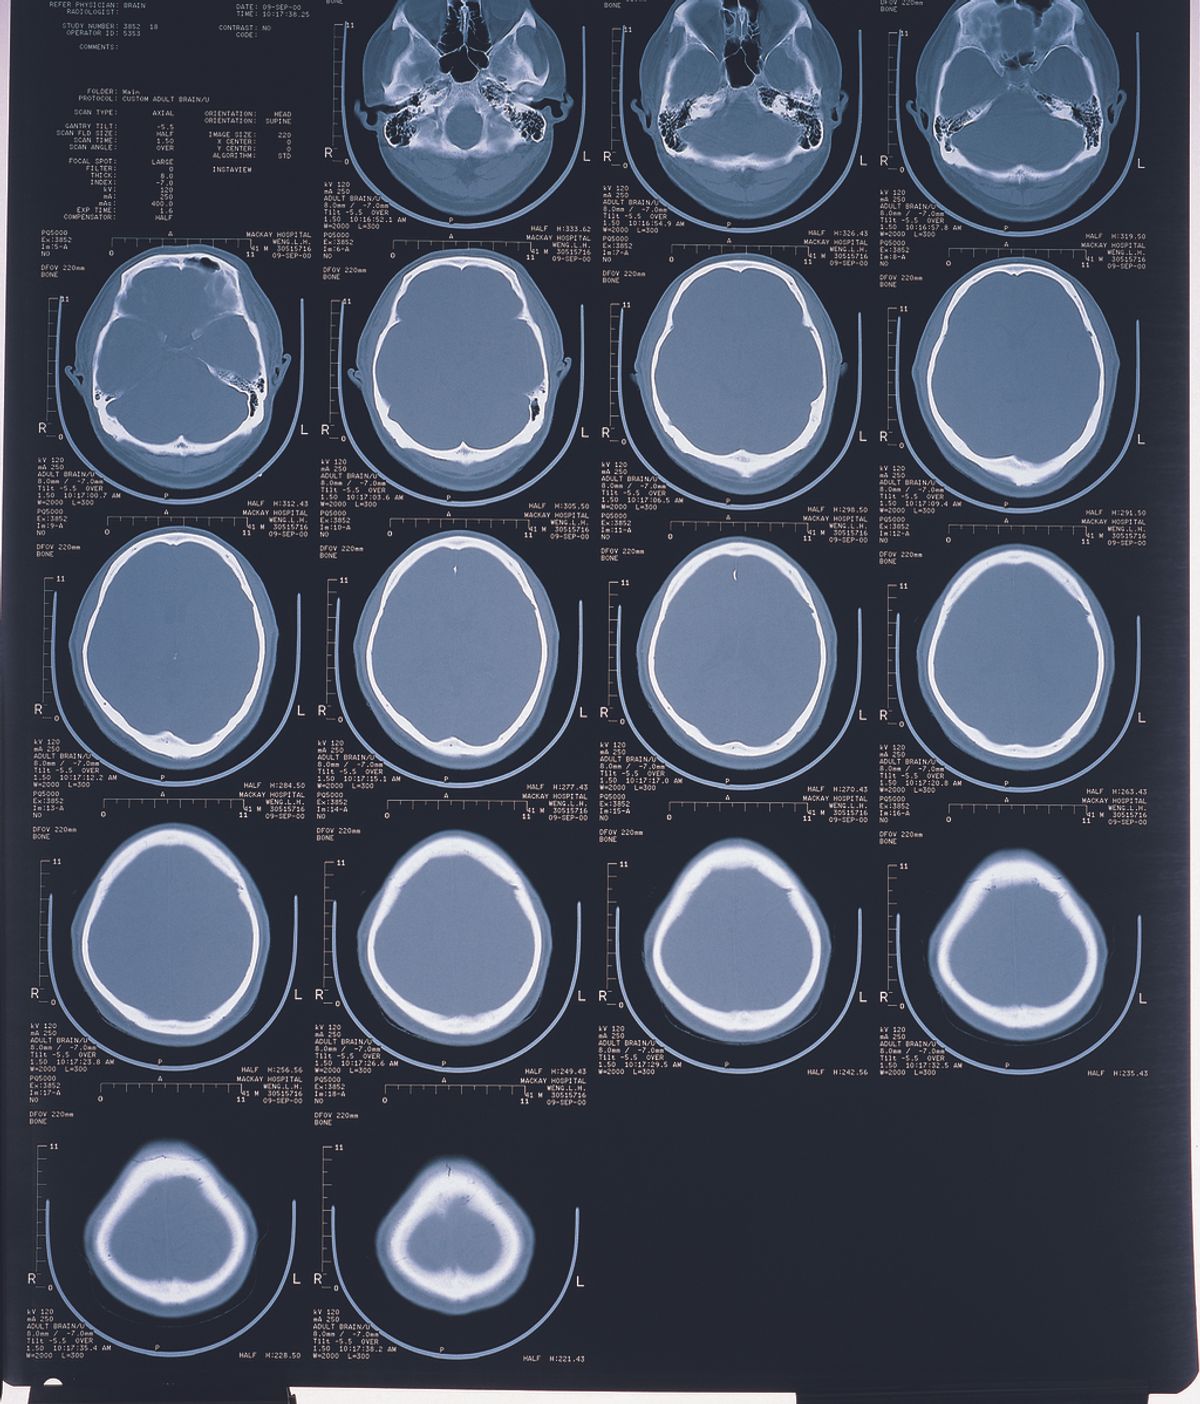 Radiografía de cerebro